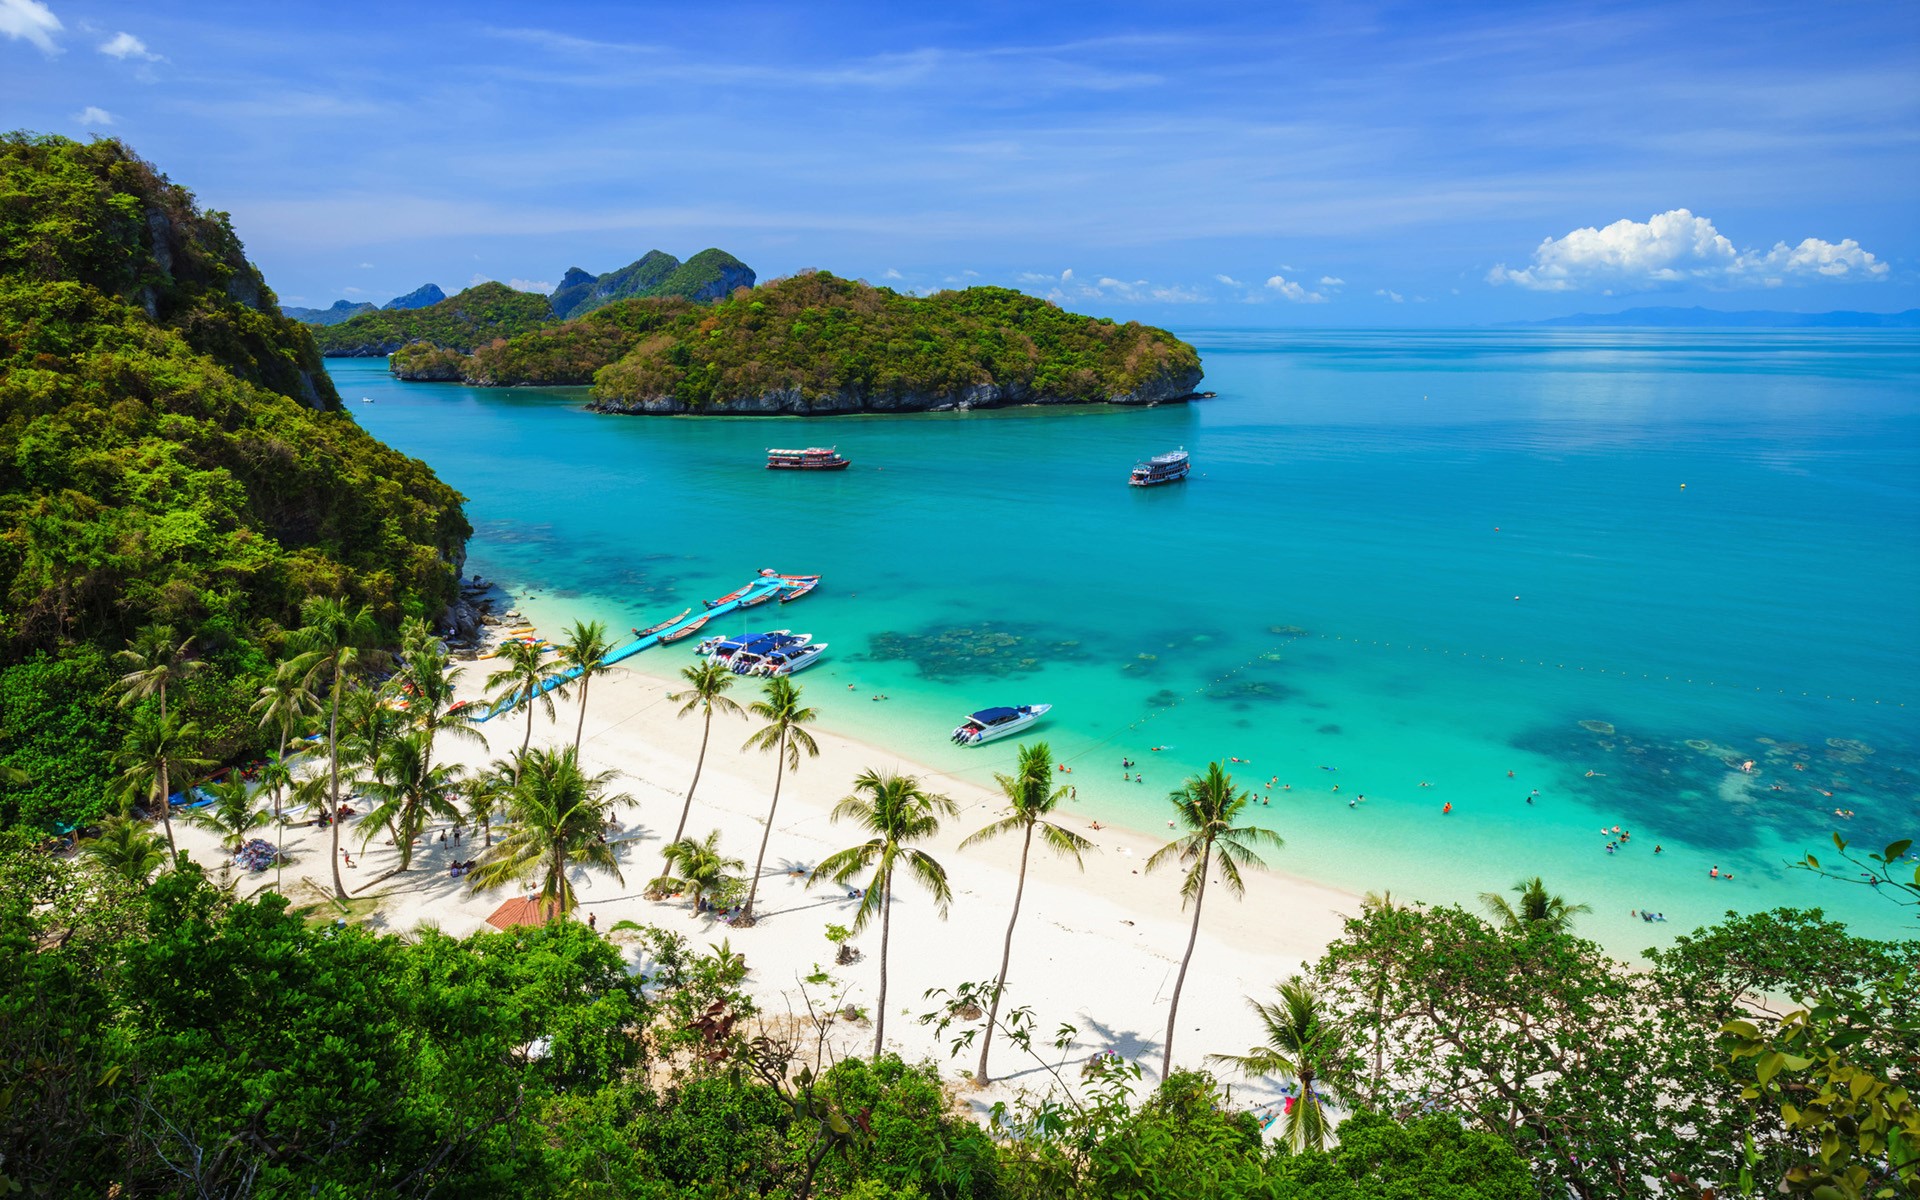 Descarga gratuita de fondo de pantalla para móvil de Mar, Playa, Horizonte, Árbol, Océano, Tierra, Barco, Fotografía, Tailandia, Tropico.